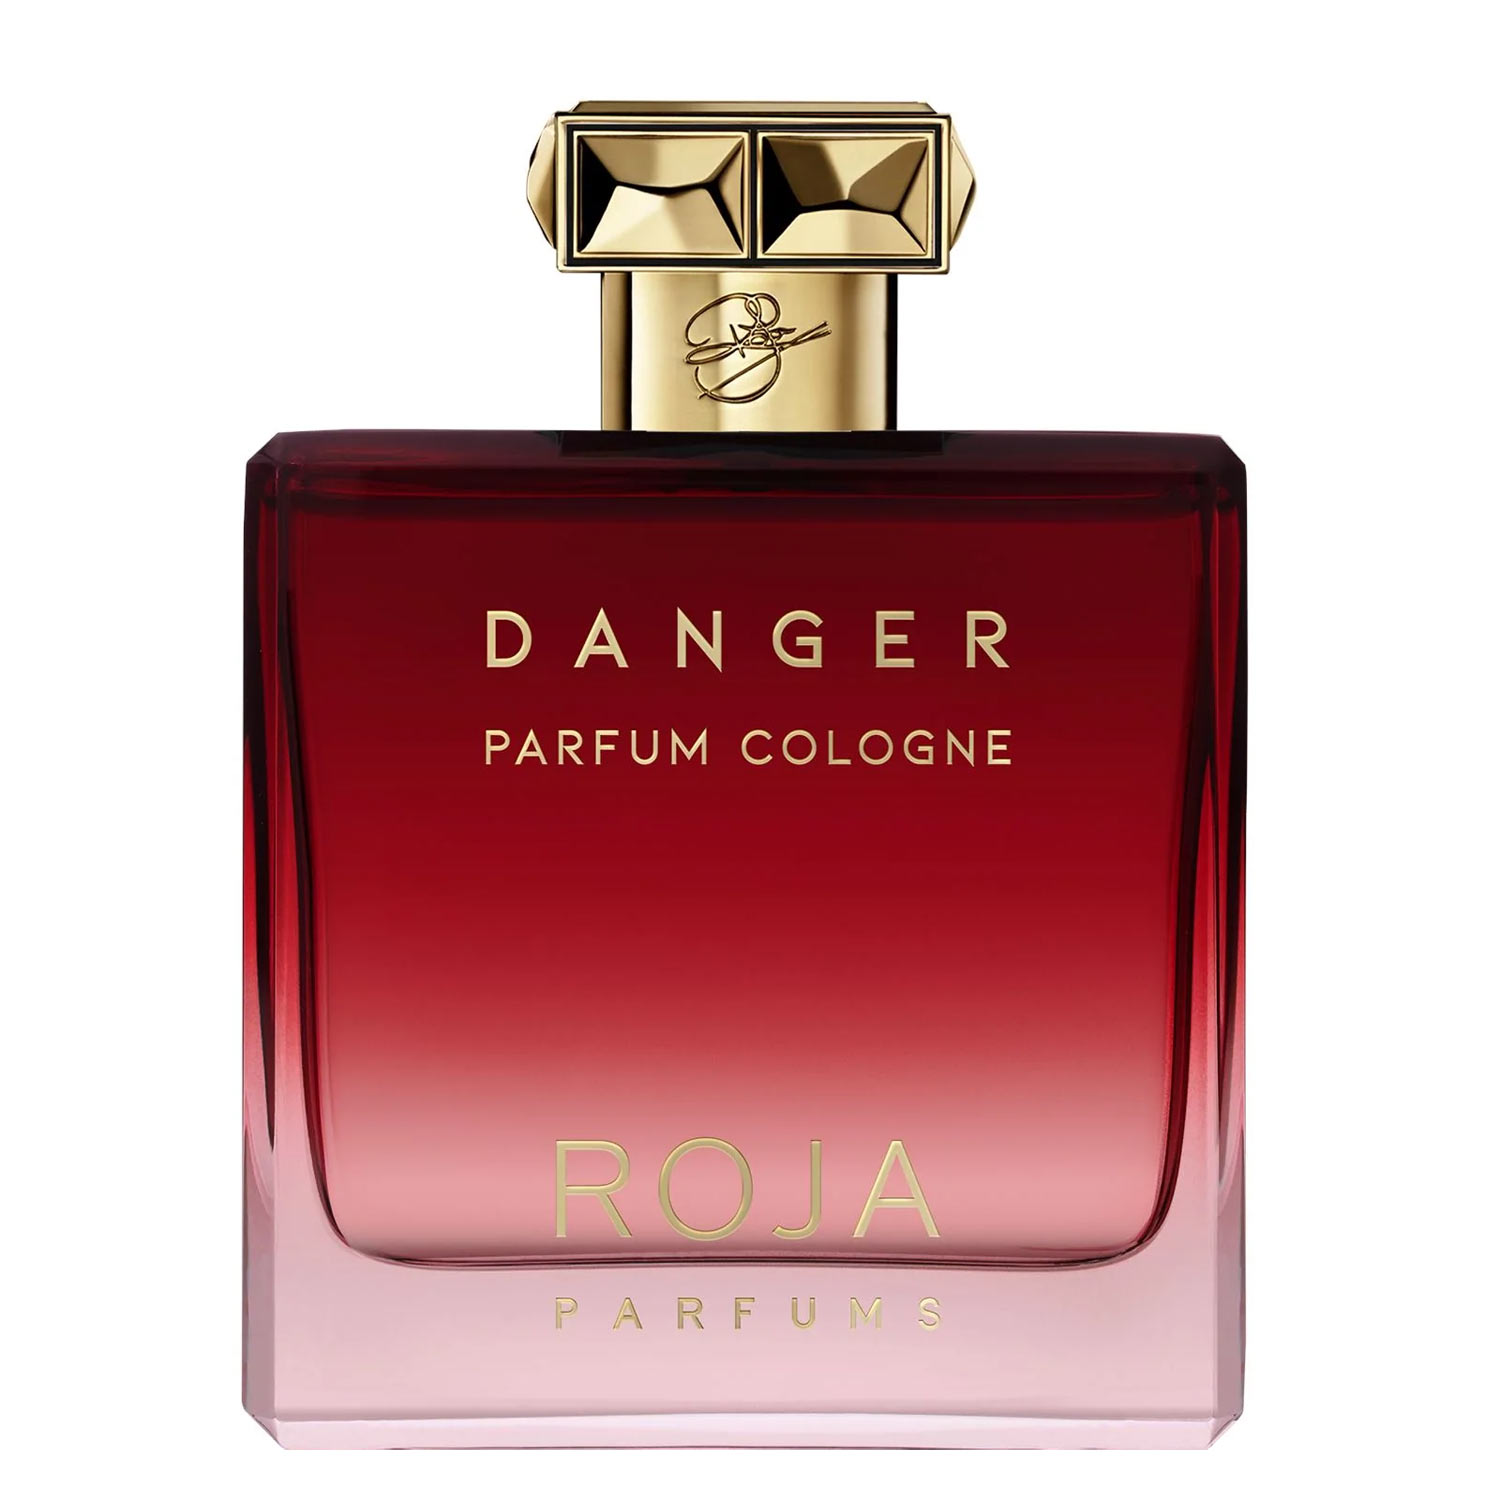 Danger Parfum Pour Homme Roja Parfums Image